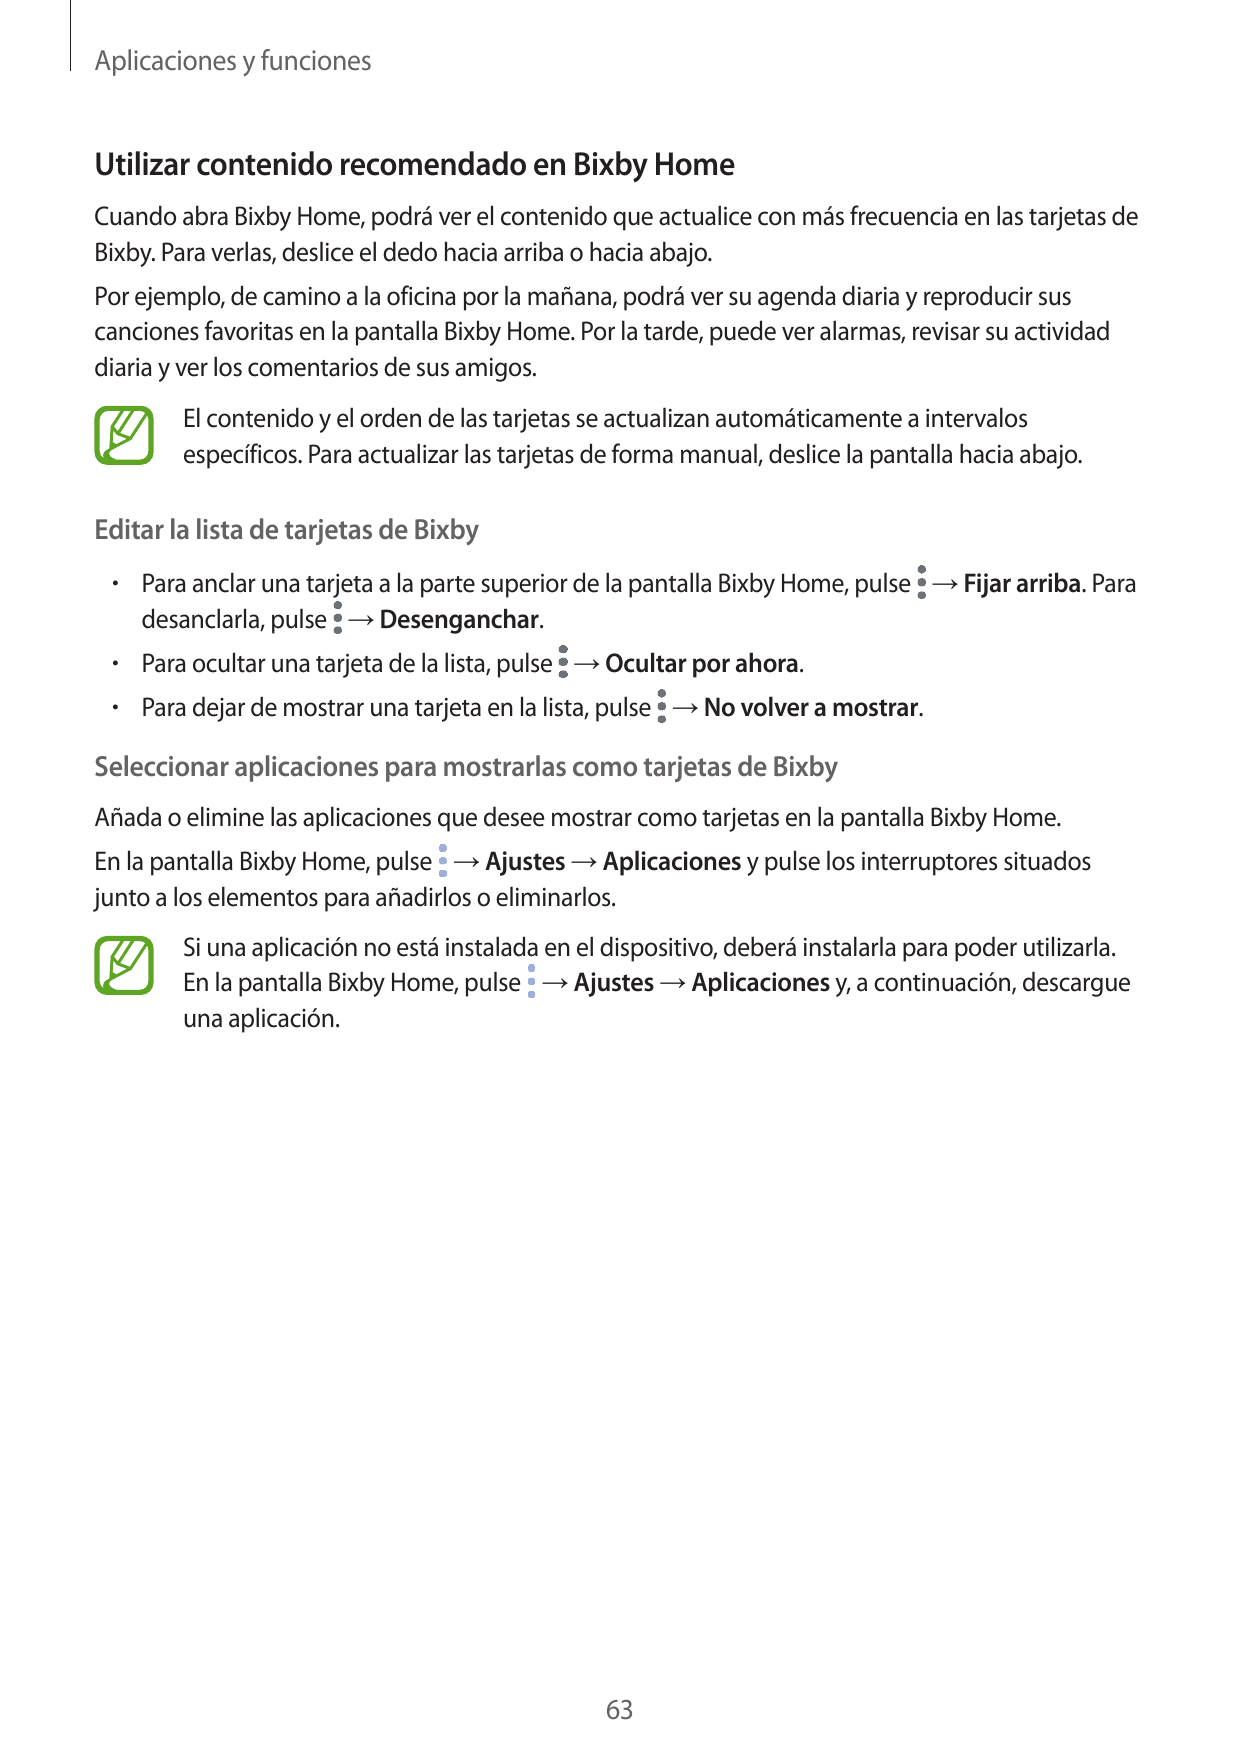 Aplicaciones y funcionesUtilizar contenido recomendado en Bixby HomeCuando abra Bixby Home, podrá ver el contenido que actualice